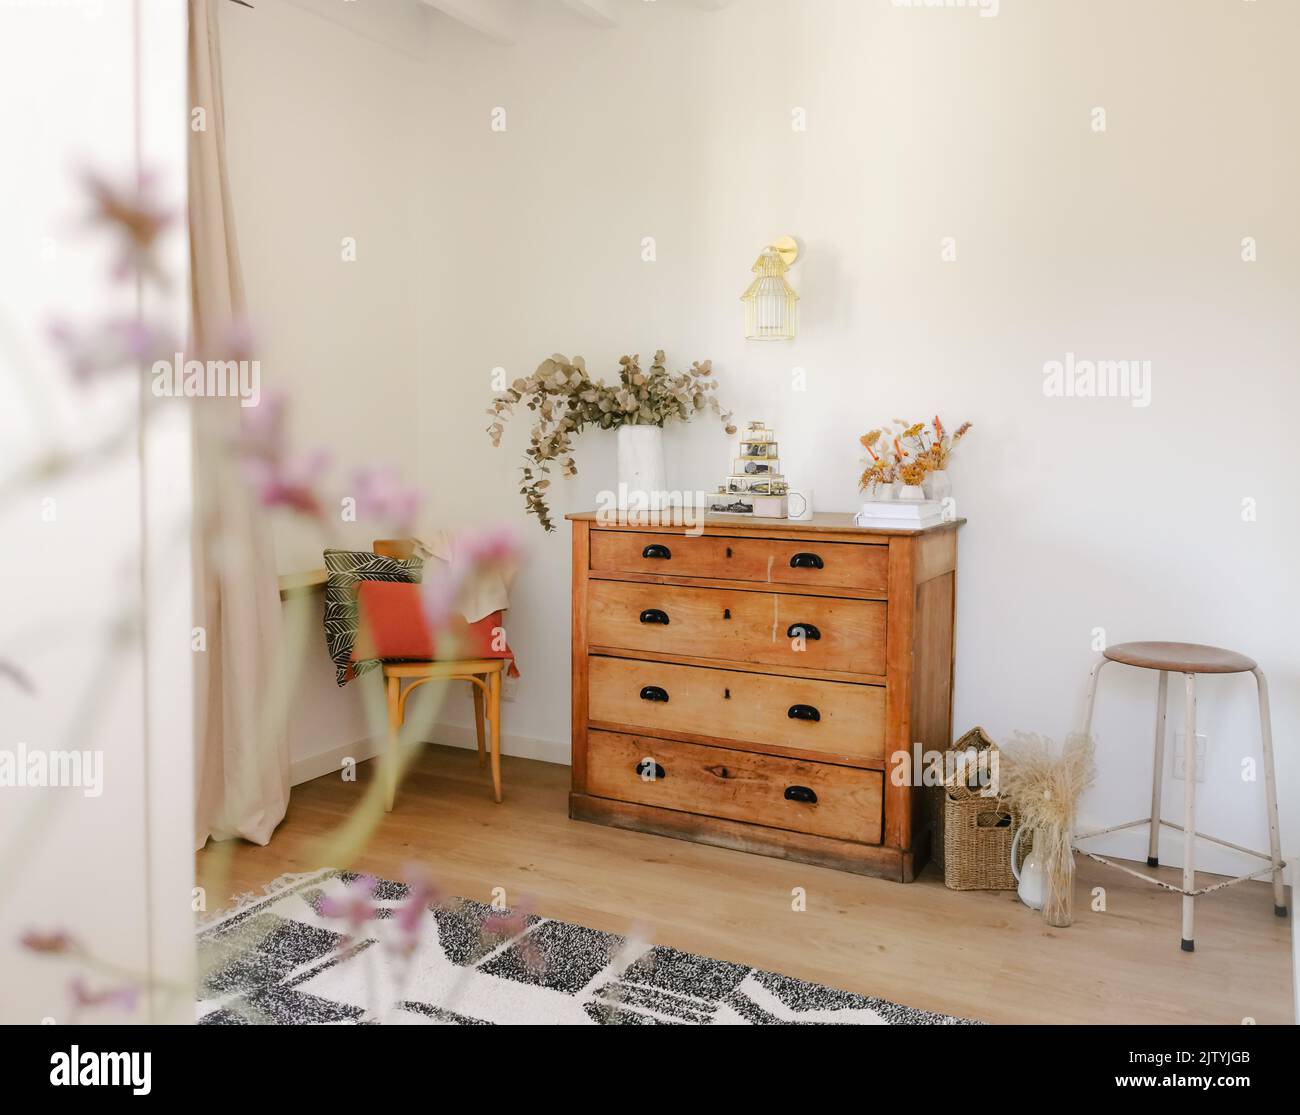 Interni accoglienti in tonalità naturali con mobili in legno antico, soffitti con travi a vista e fiori secchi come eucalipto. Design rustico moderno. Foto Stock